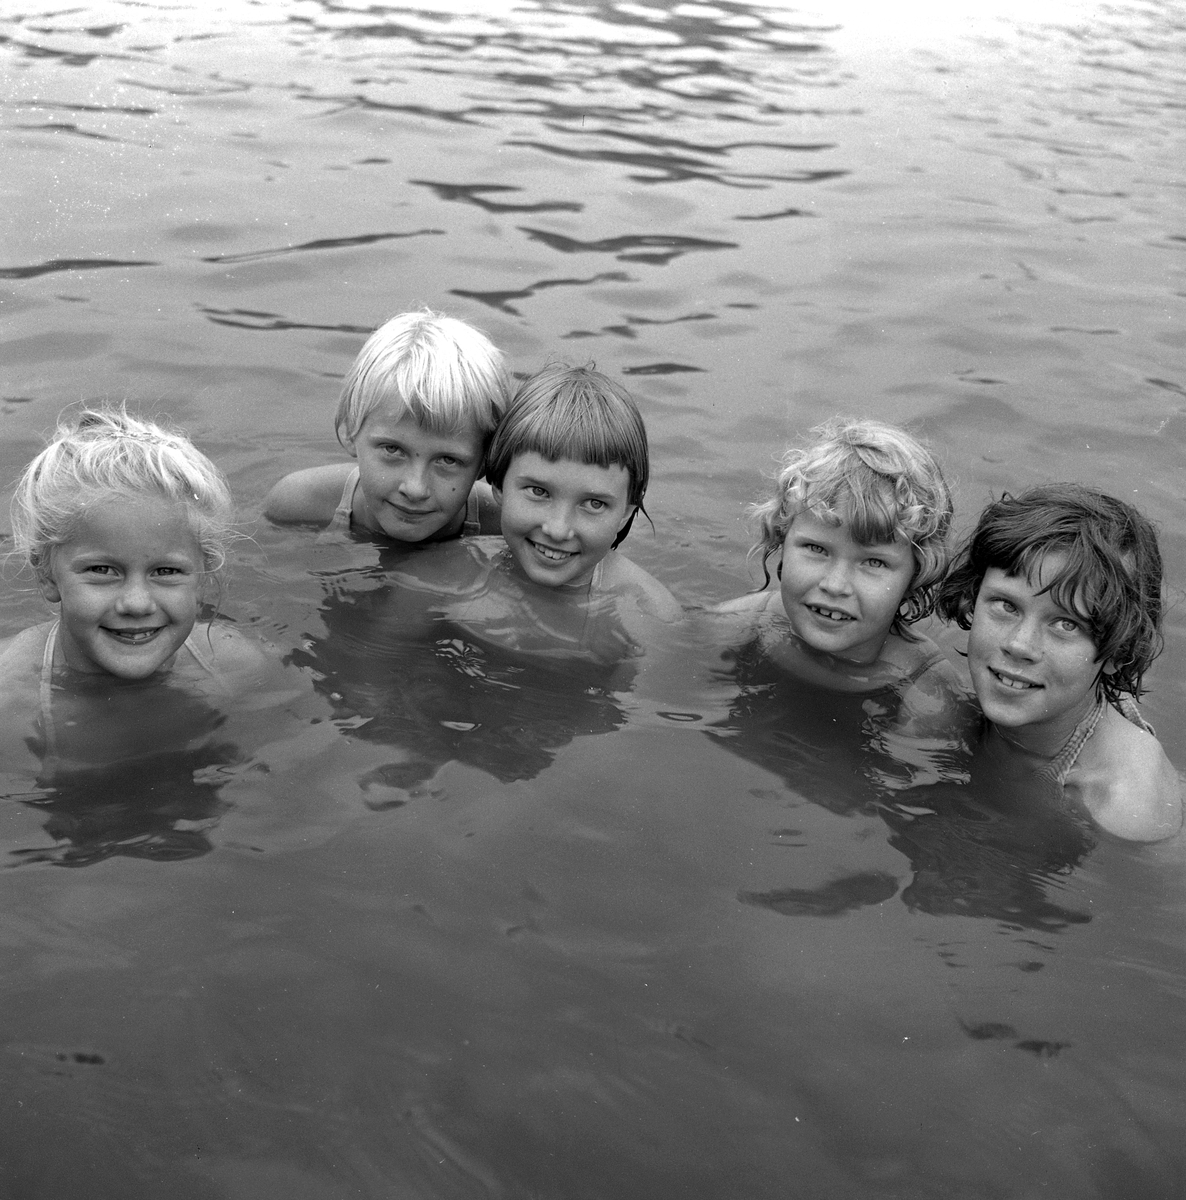 Avslutning simskolan.
26 juli 1958.